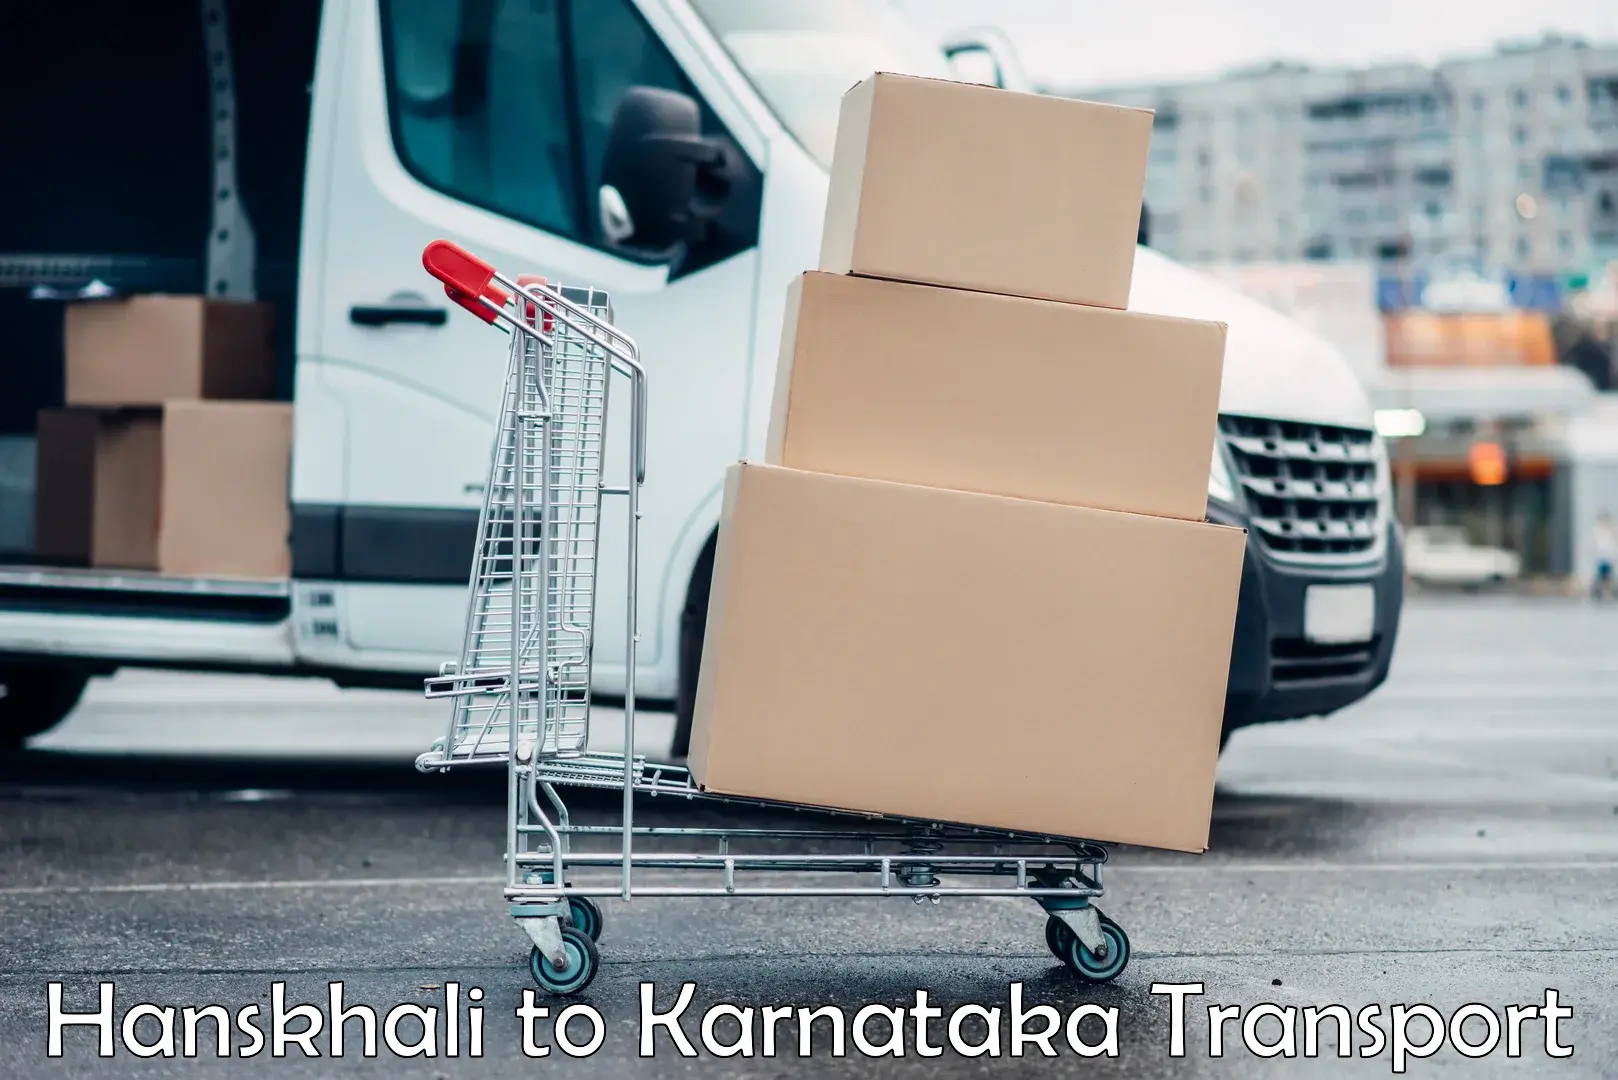 Delivery service Hanskhali to Nanjangud